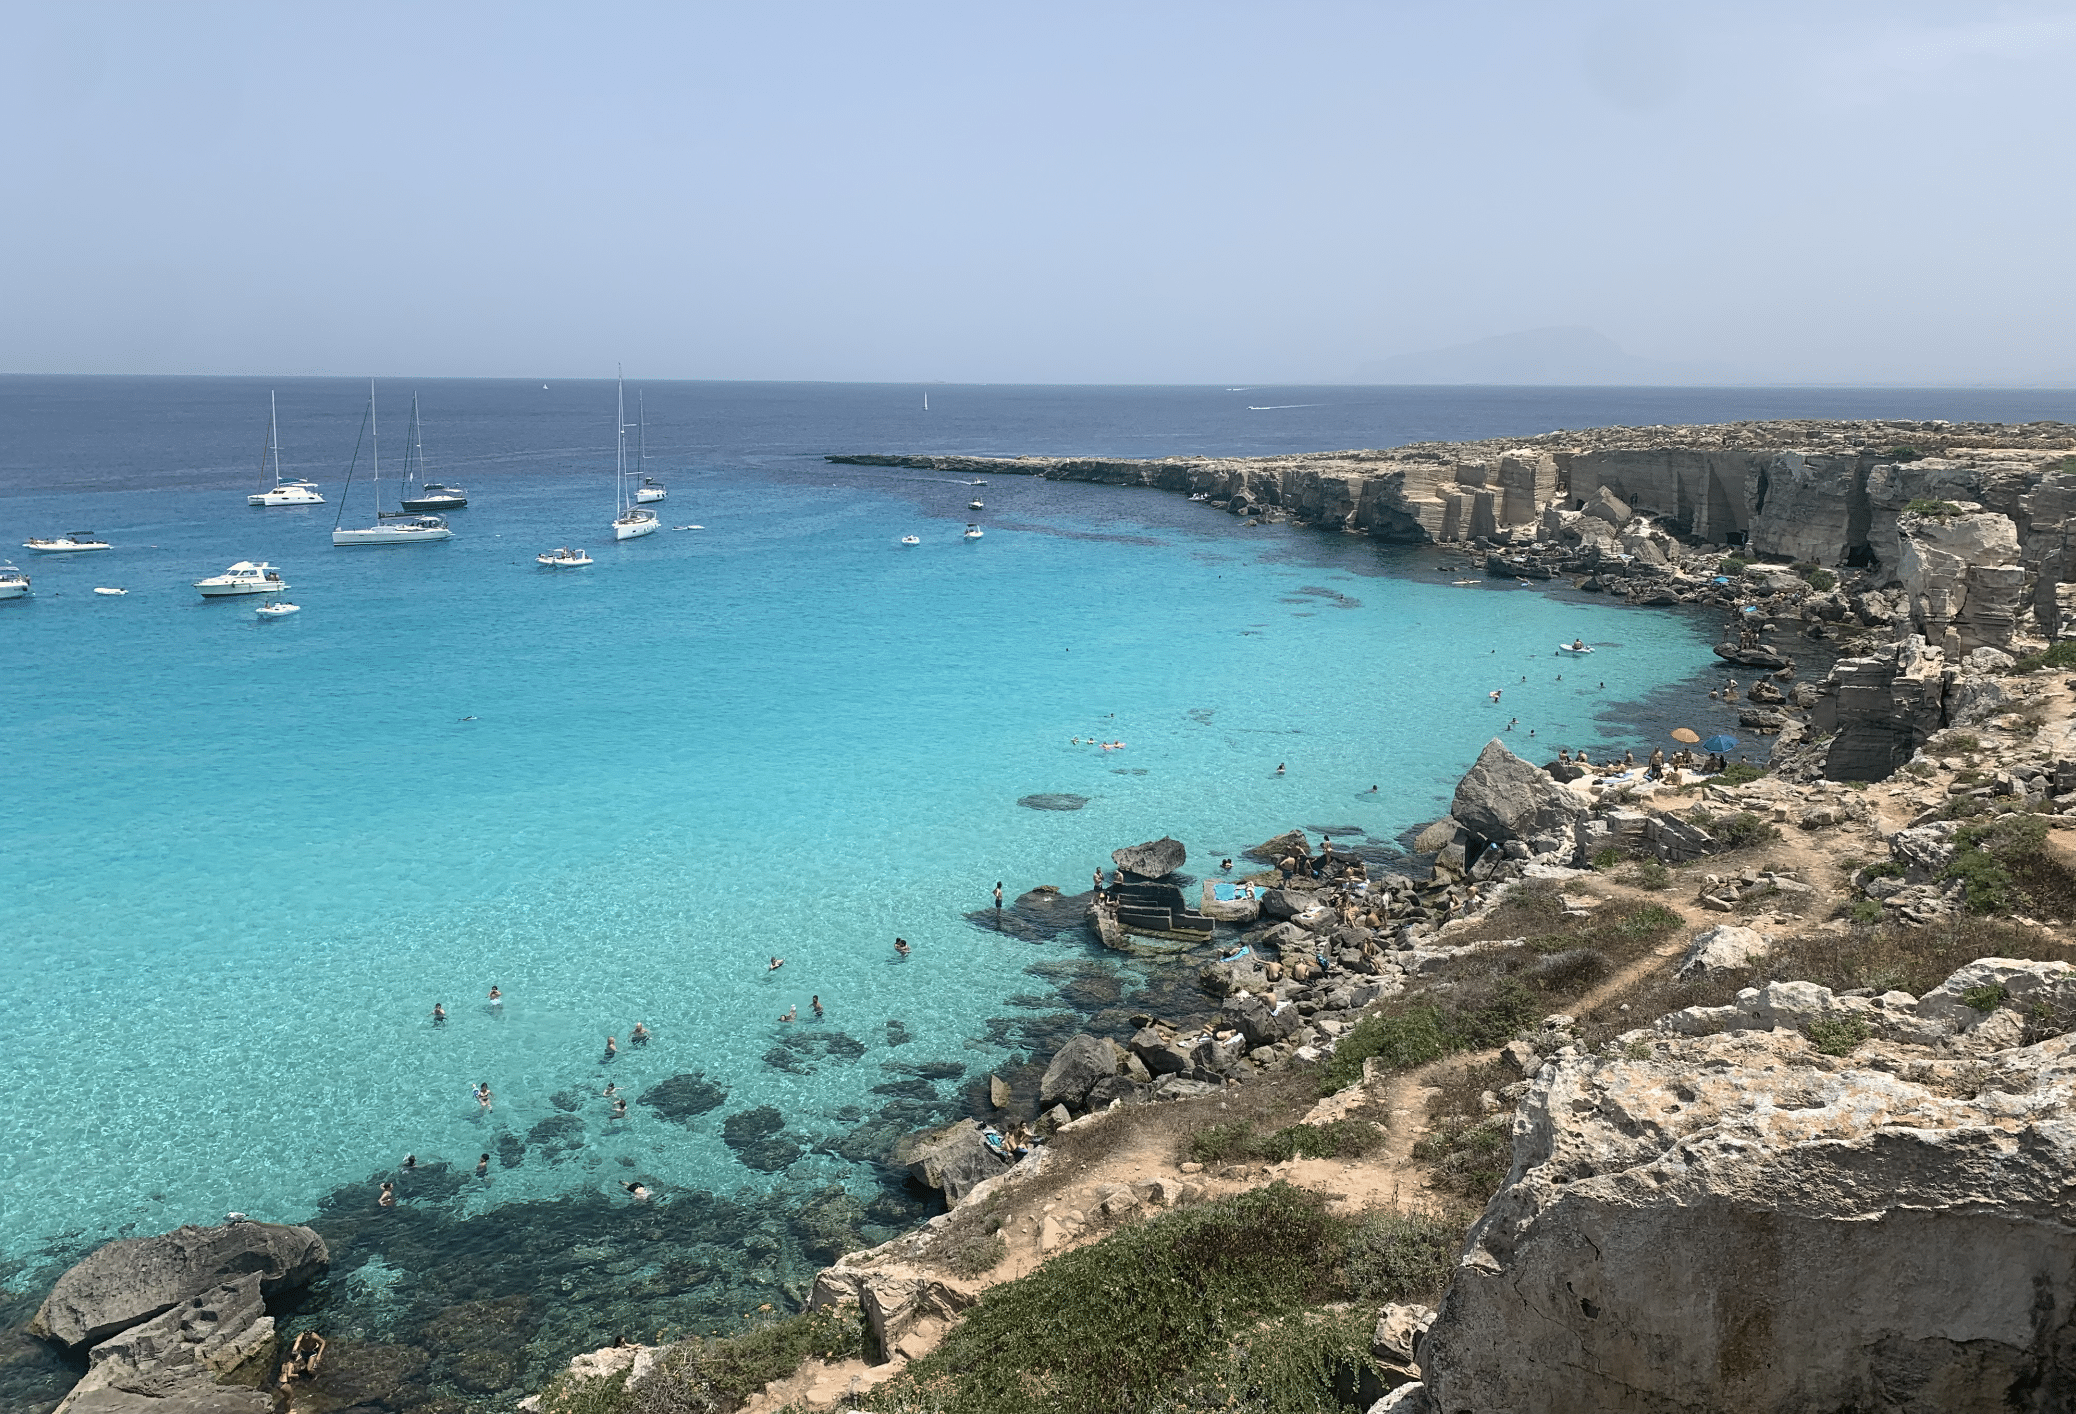 plus belles plages de sicile : les criques de l'ile de favignana